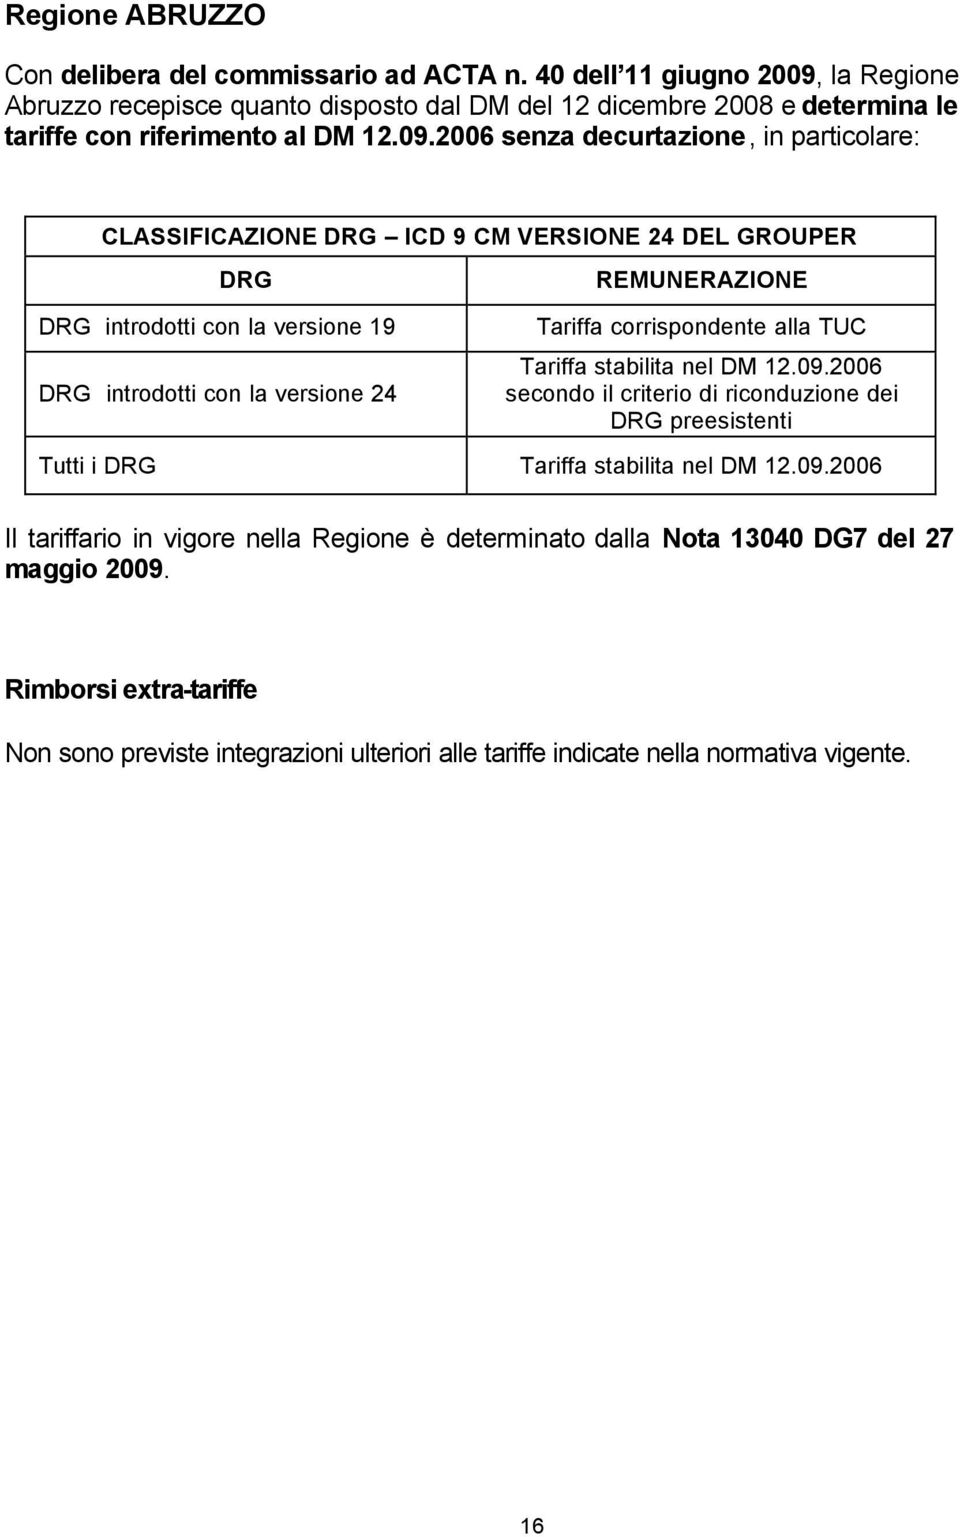 la Regione Abruzzo recepisce quanto disposto dal DM del 12 dicembre 2008 e determina le tariffe con riferimento al DM 12.09.